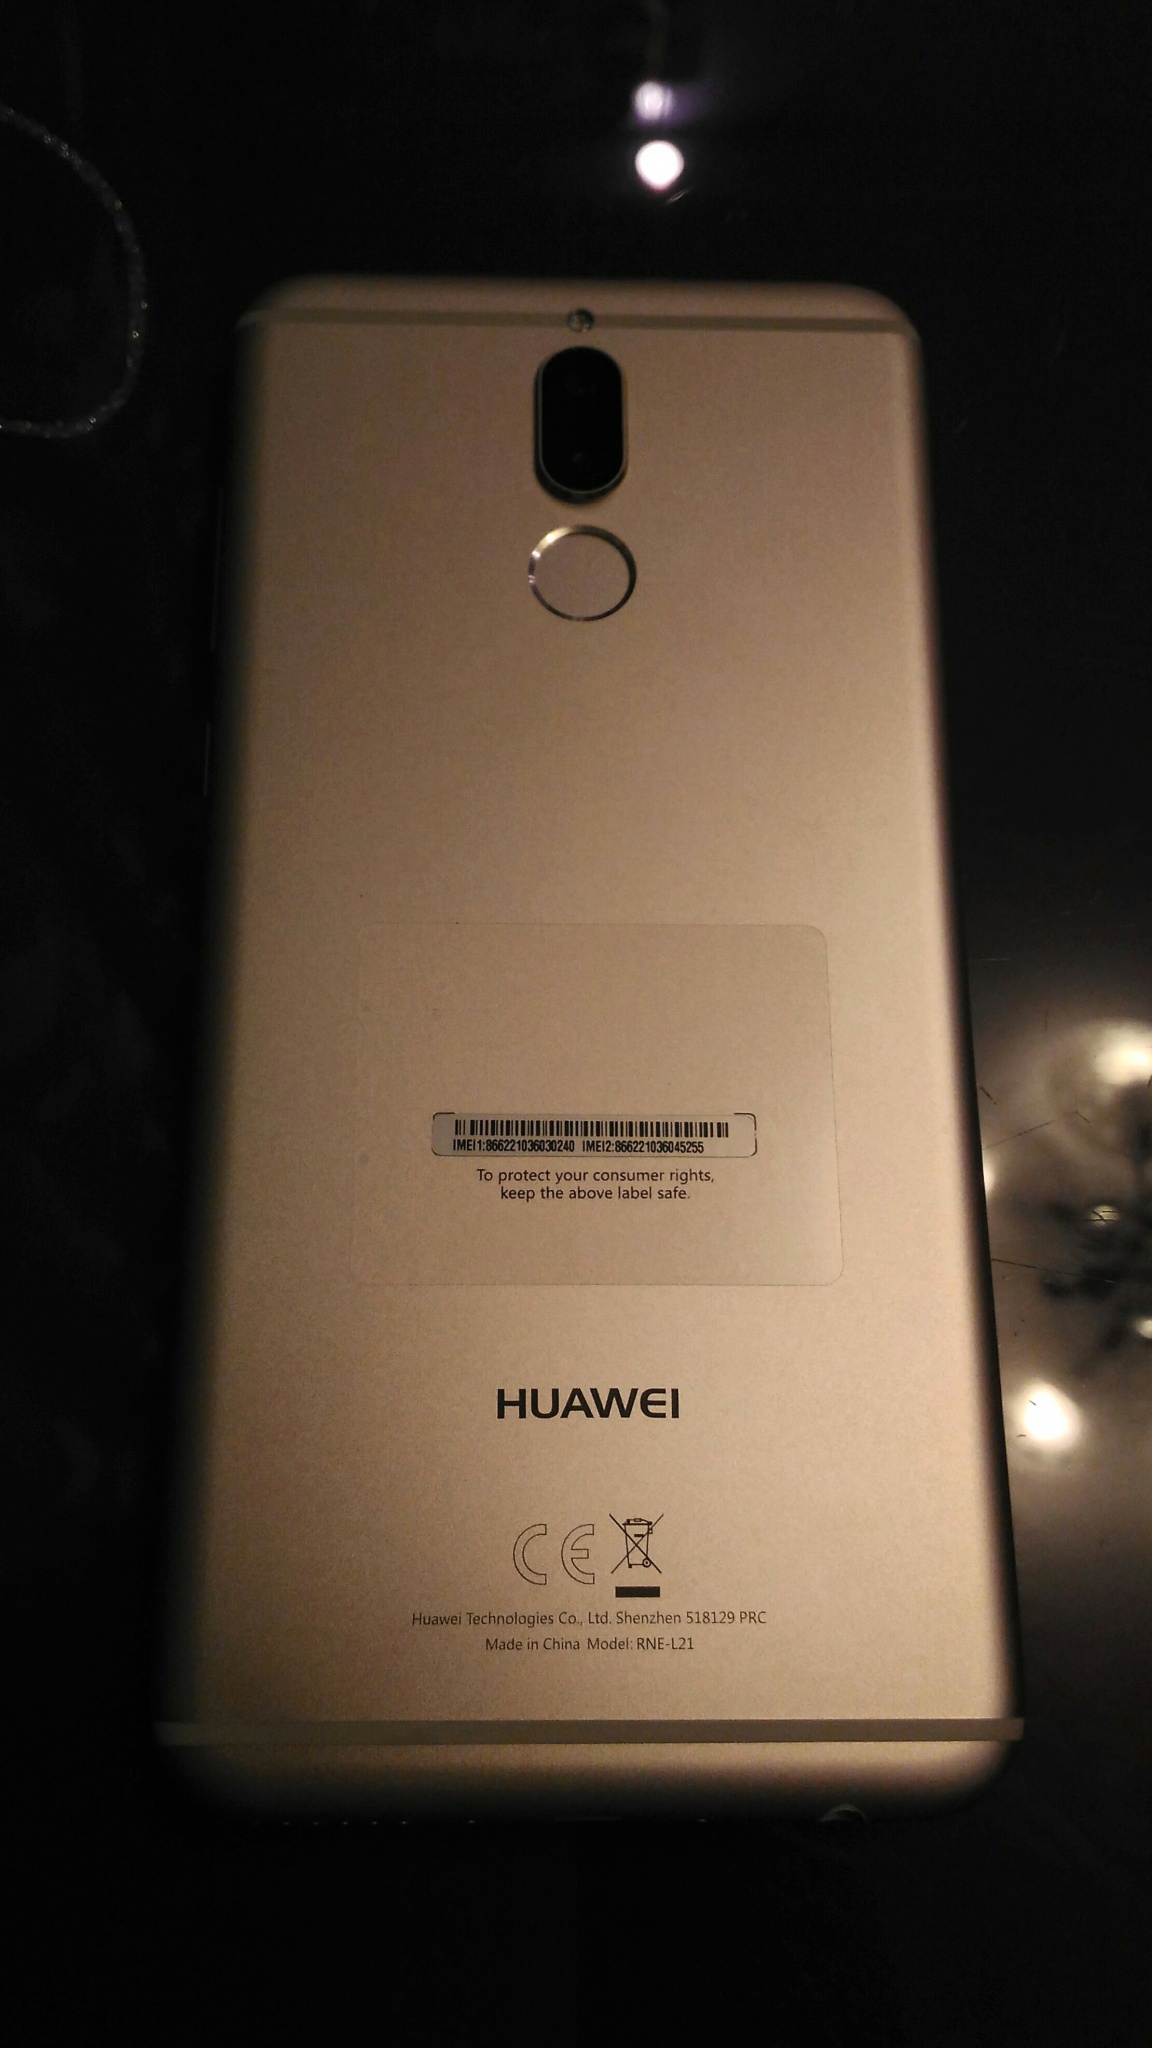 Huawei nova 2s (хуавей нова 2с) - обзор нового субфлагмана с четырьмя камерами, характеристики, фото, сравнение с honor v10, дата выхода и цена - stevsky.ru - обзоры смартфонов, игры на андроид и на пк